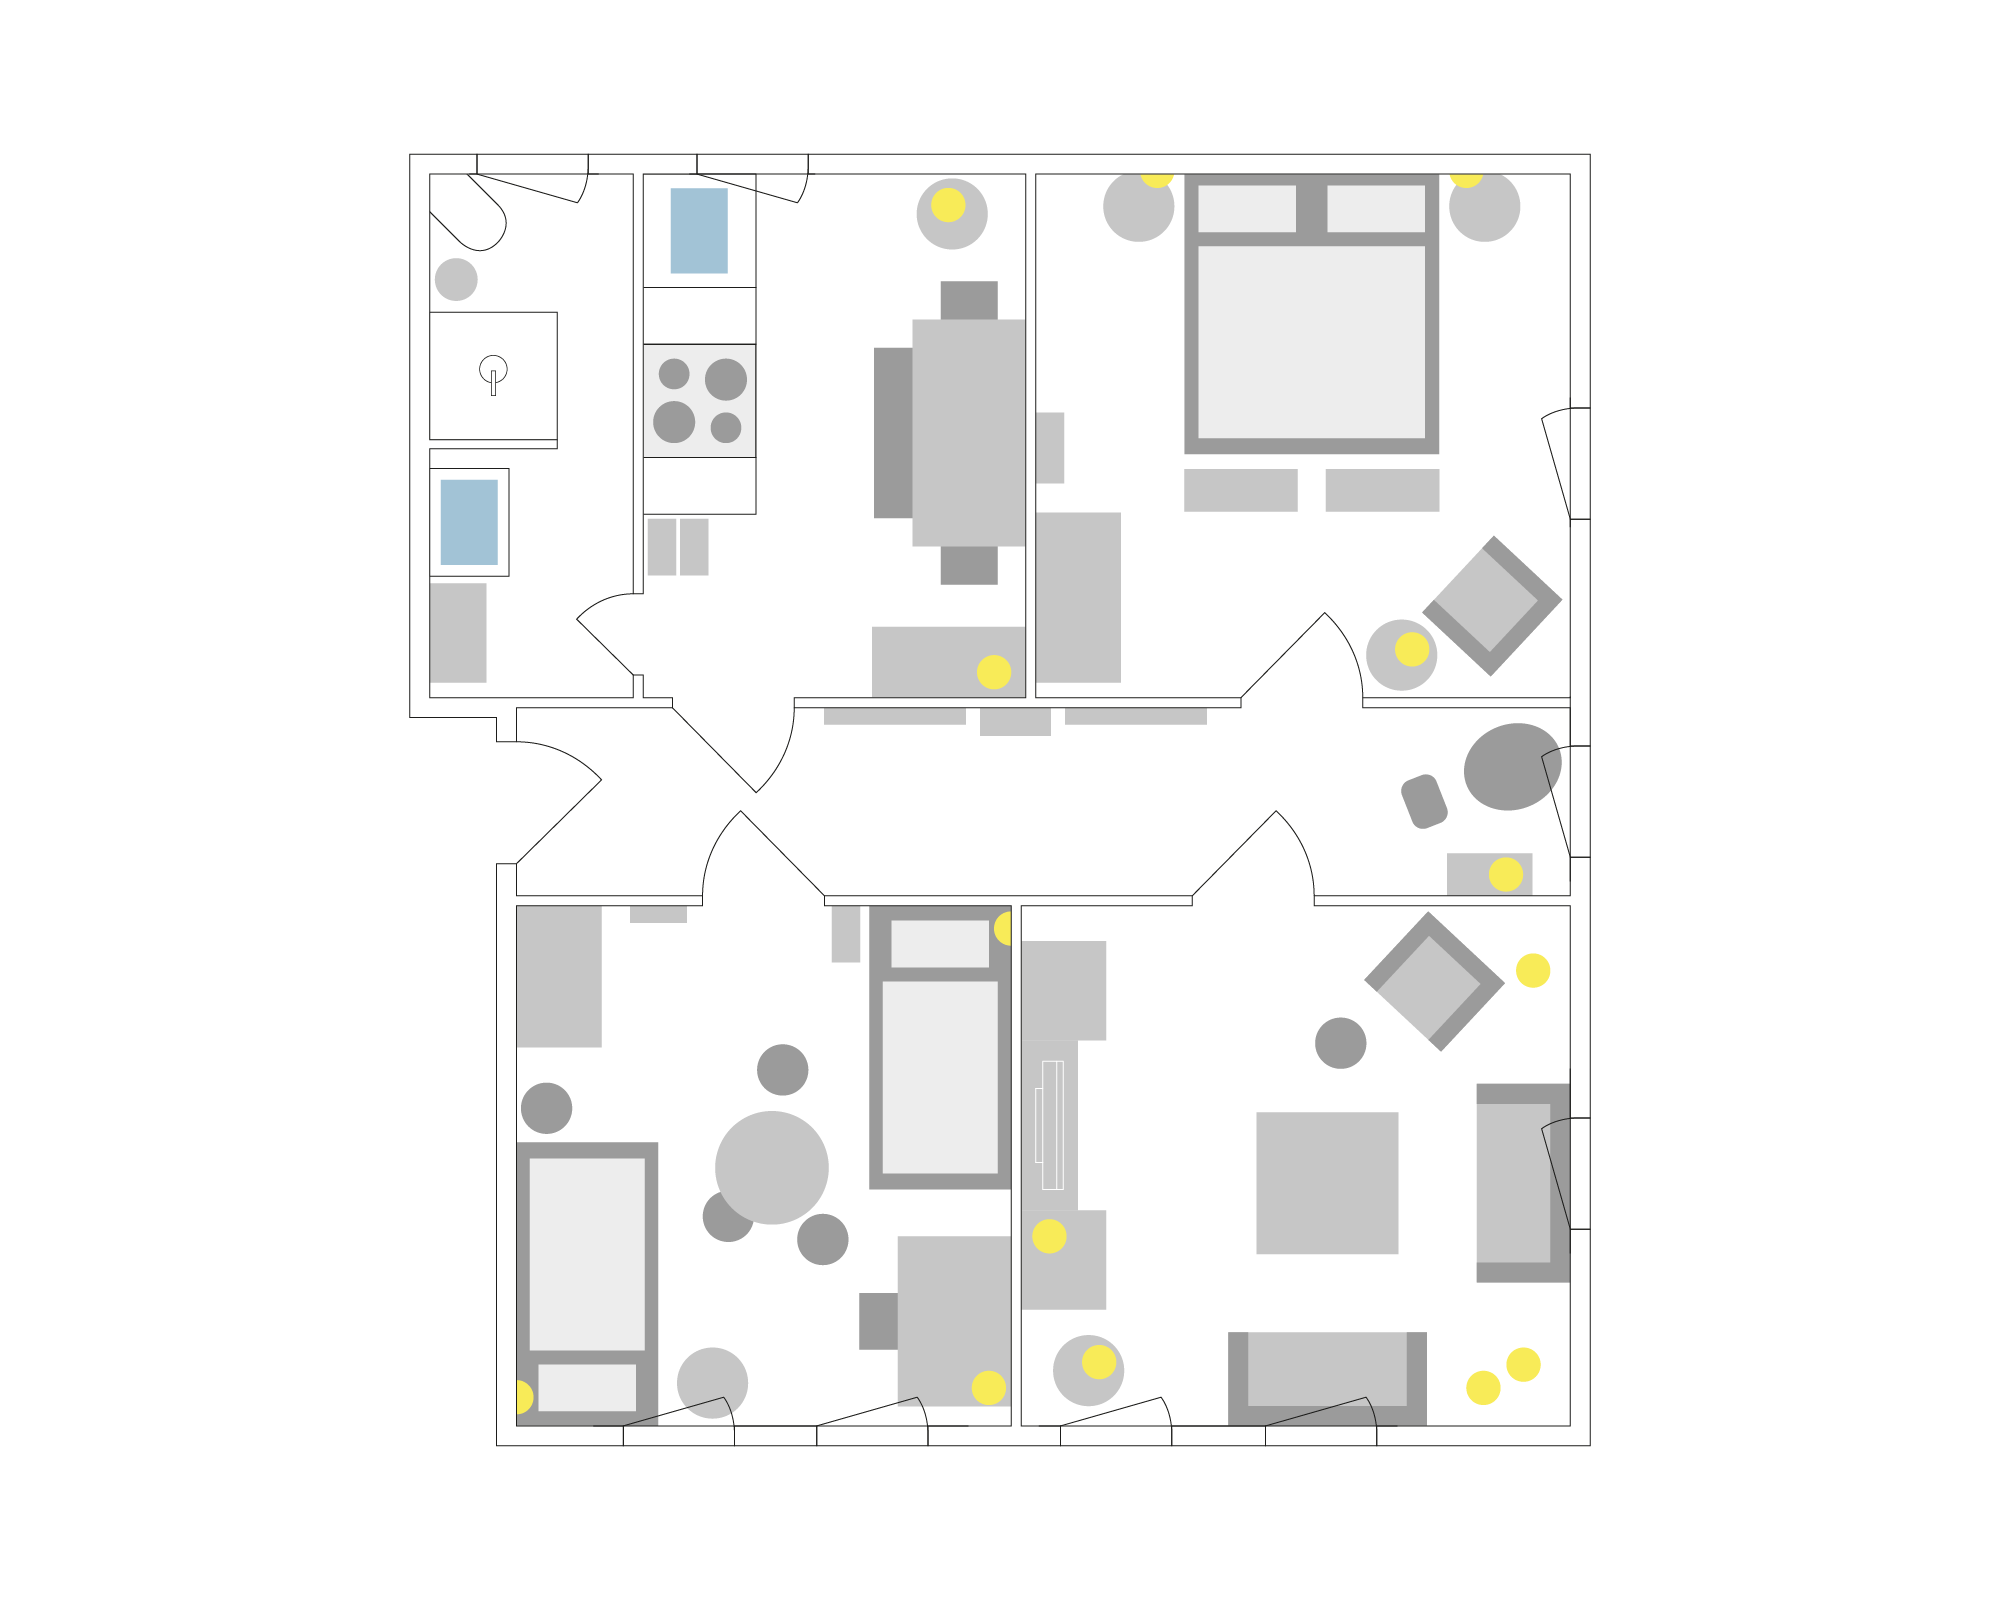 Grundriss der Wohnung